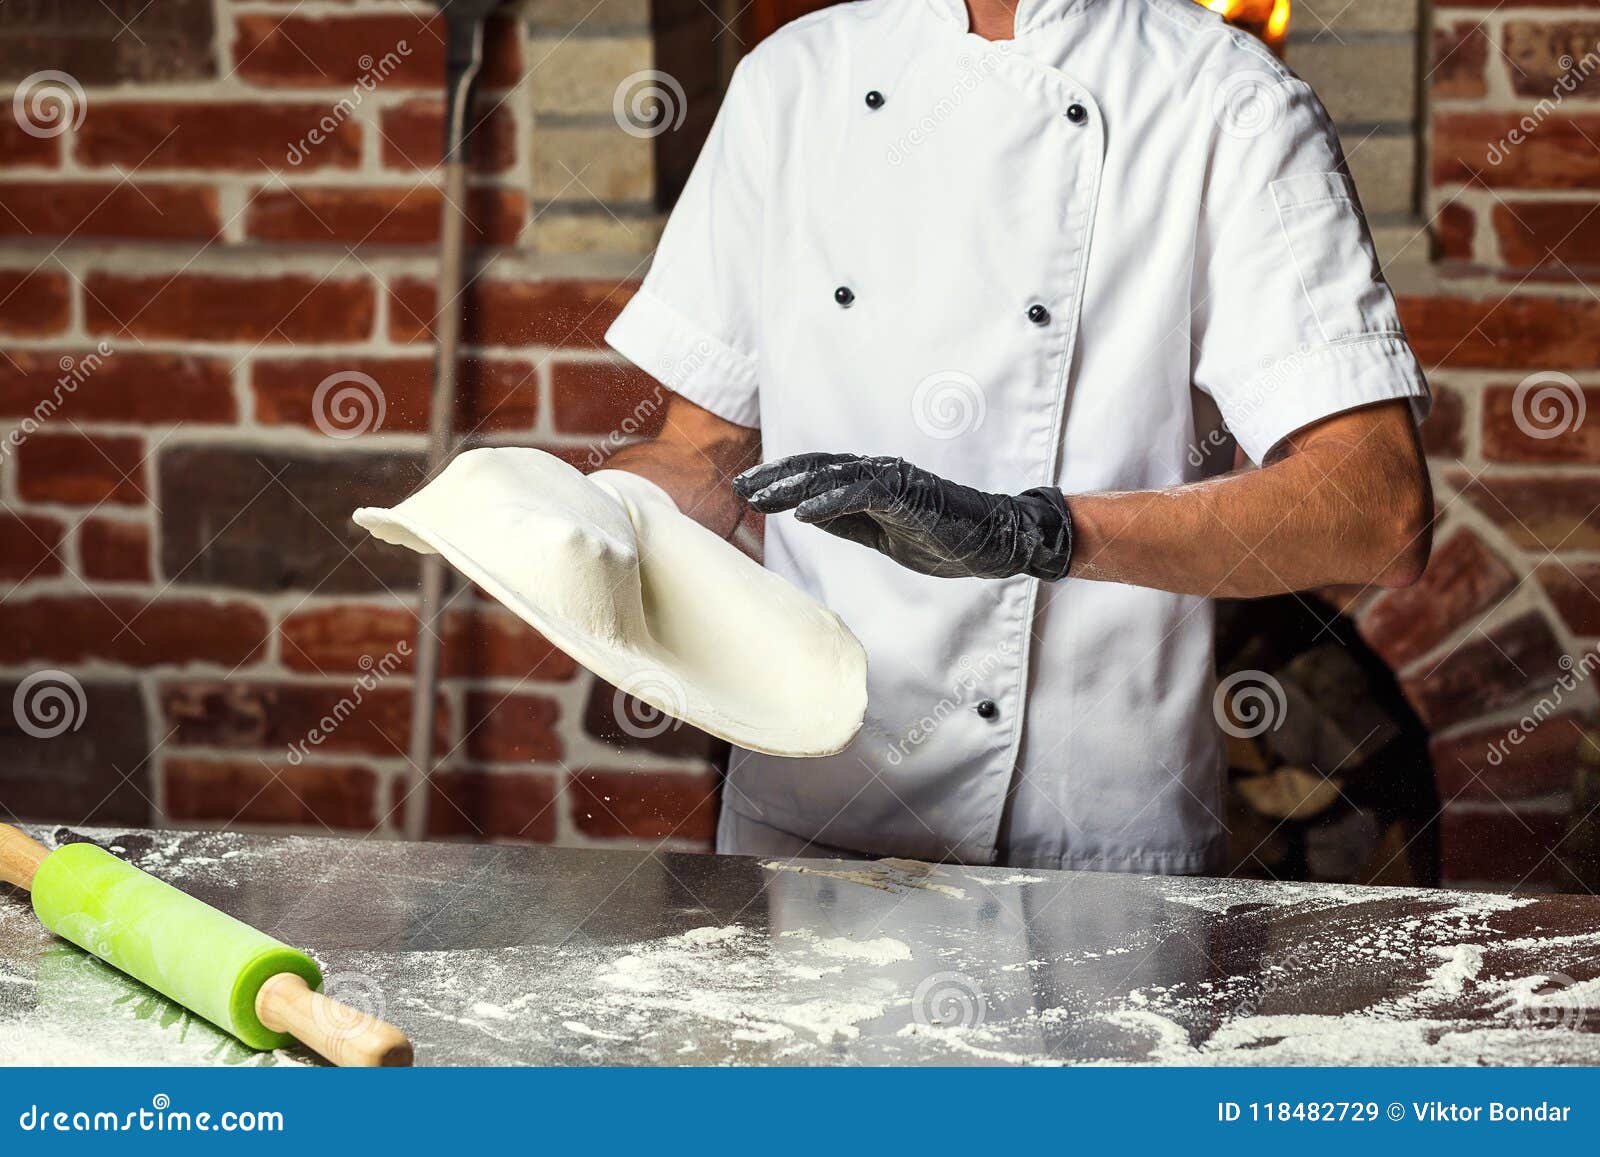 человек который делает тесто для пиццы фото 111